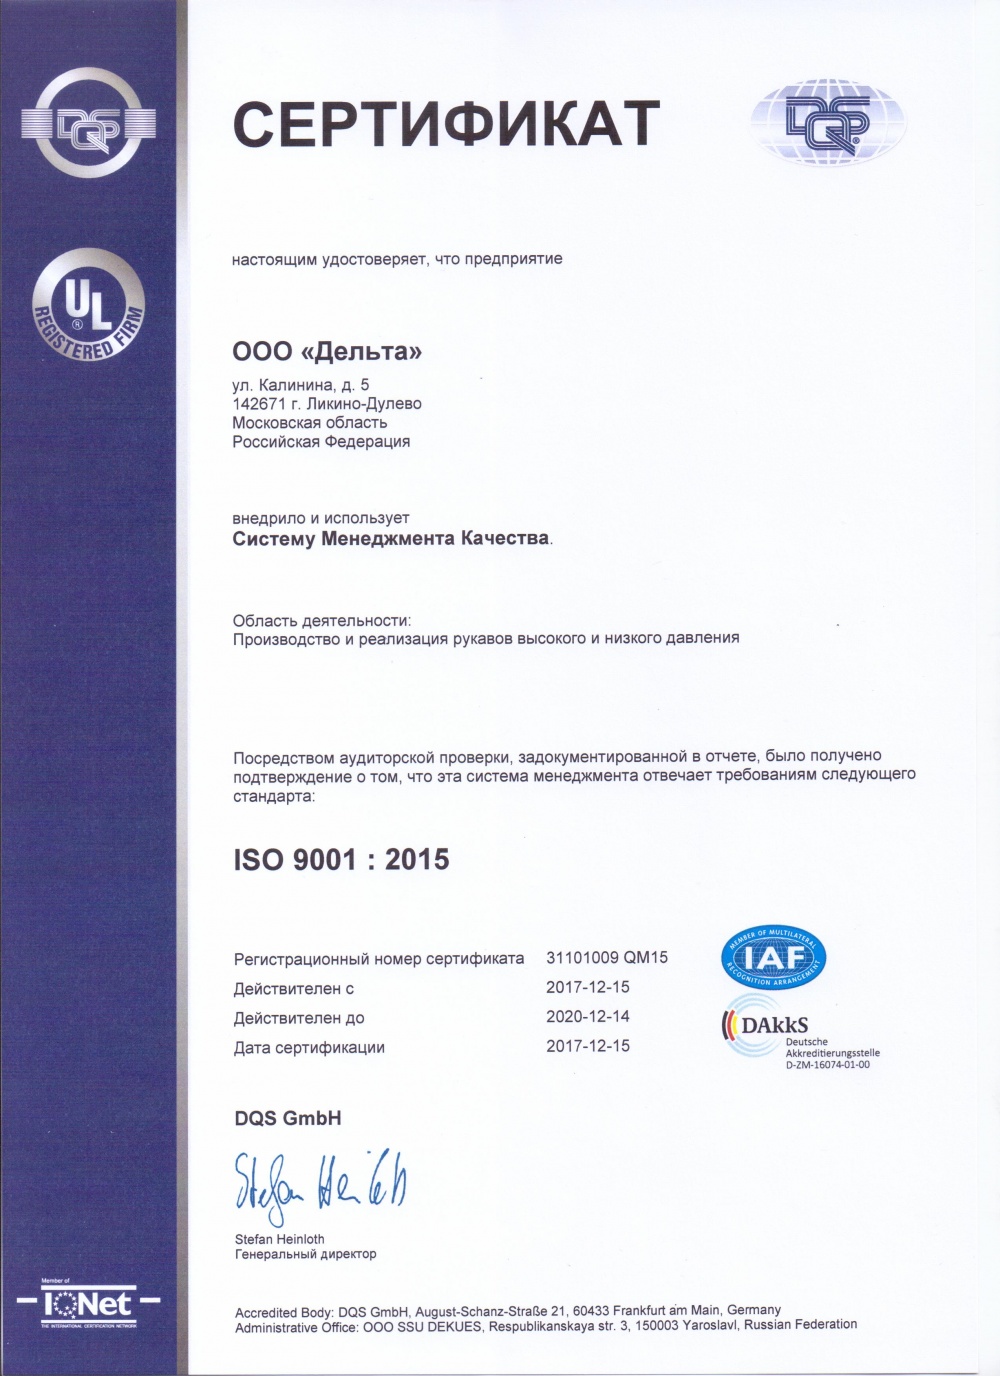 Сертификат СМК3